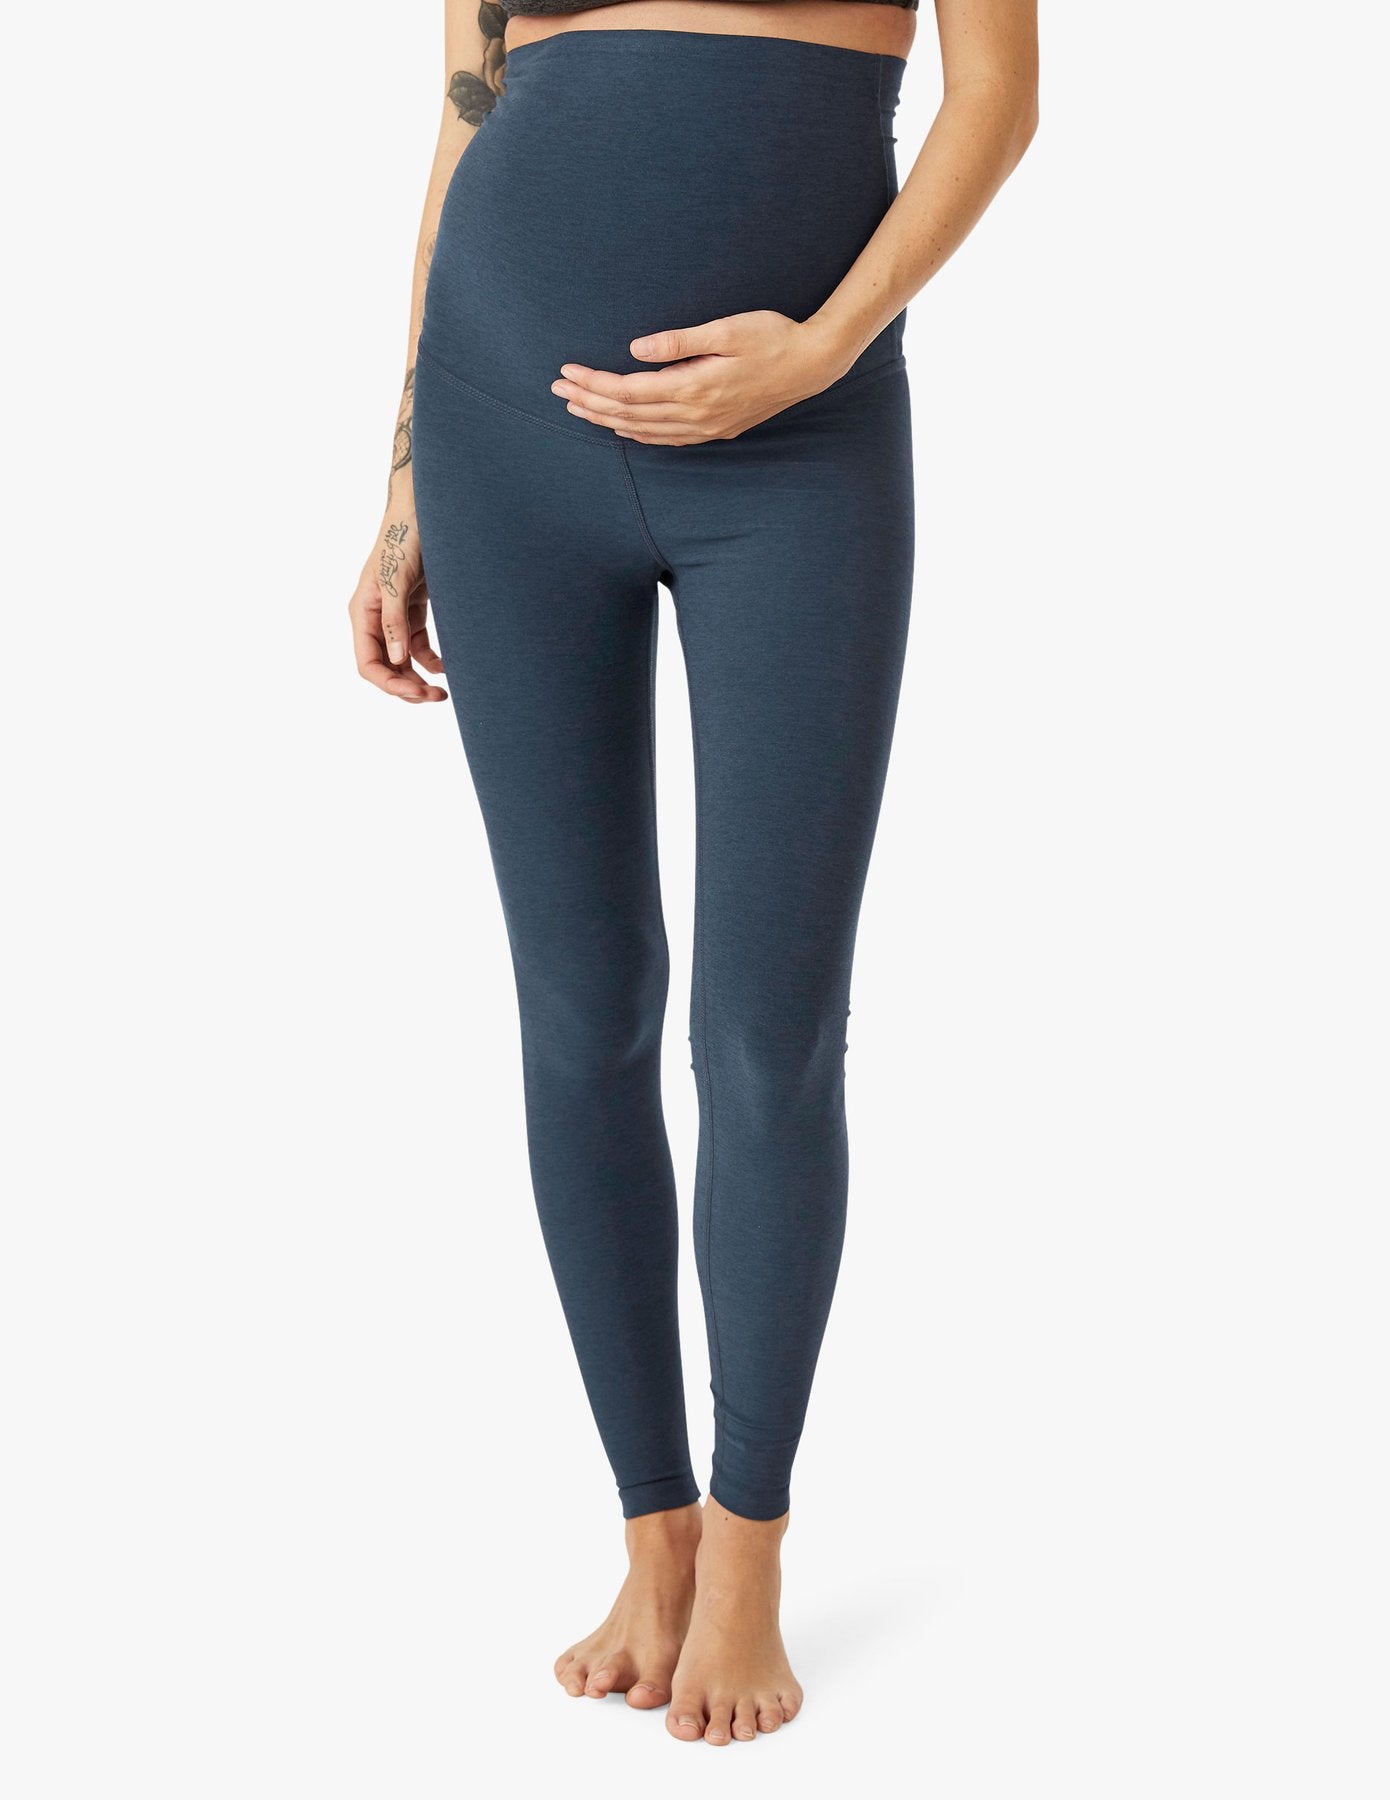 Lustrous Maternity Legging – Back 2 Basics